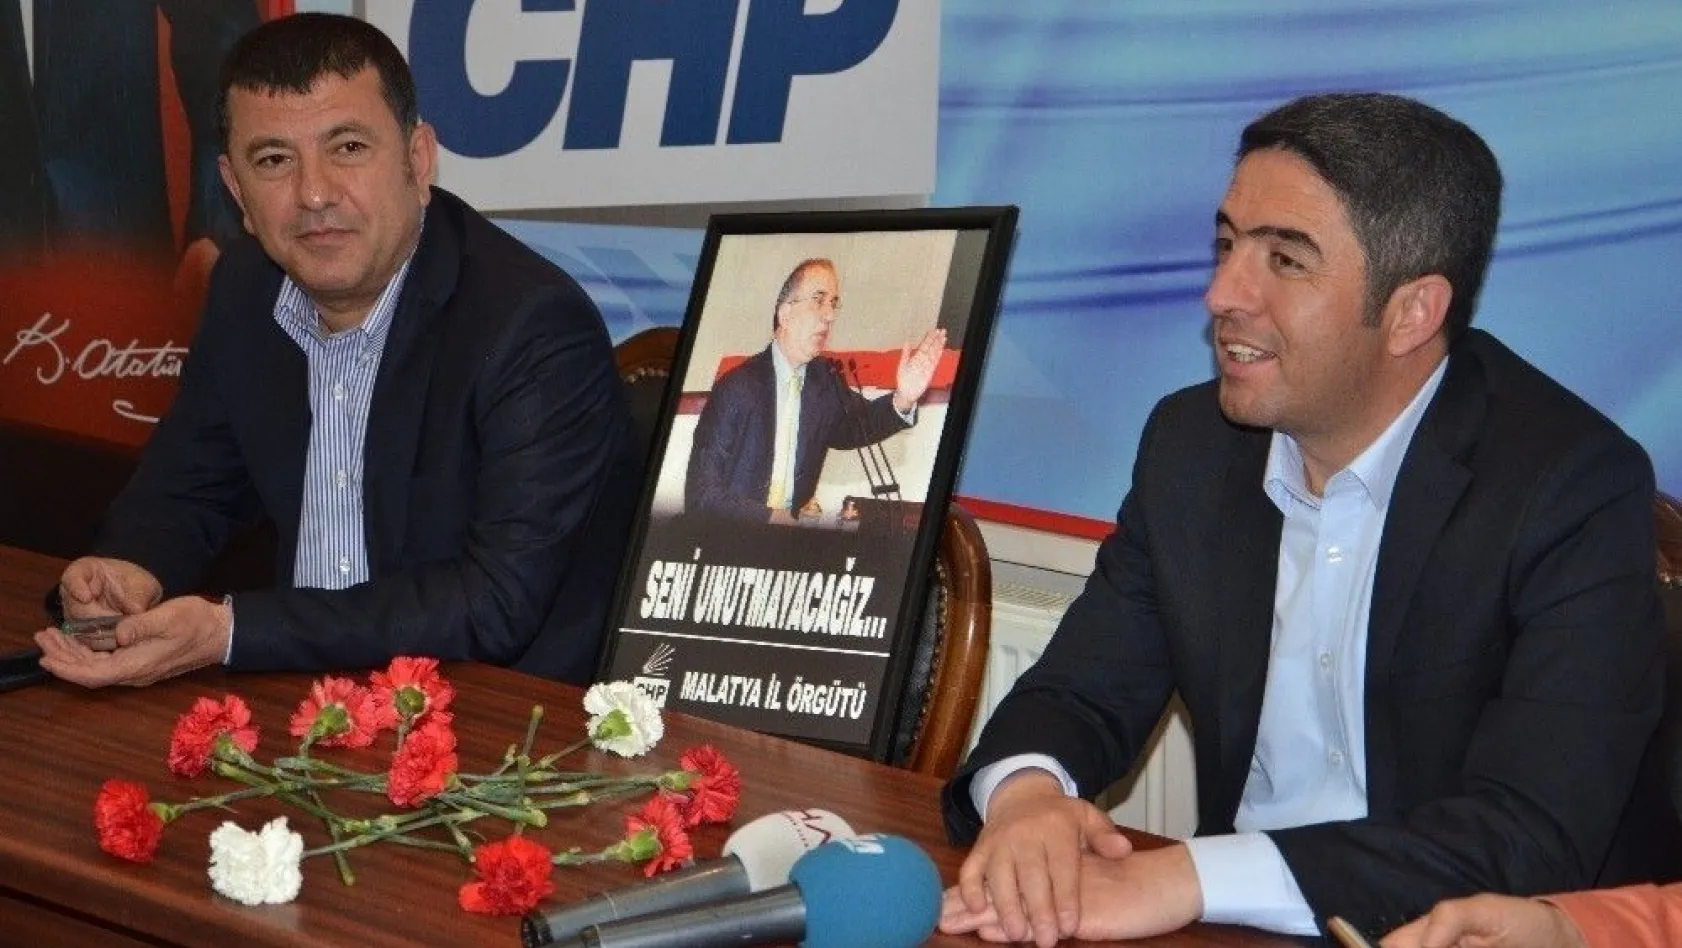 CHP Genel Başkan Yardımcısı Veli Ağbaba:
